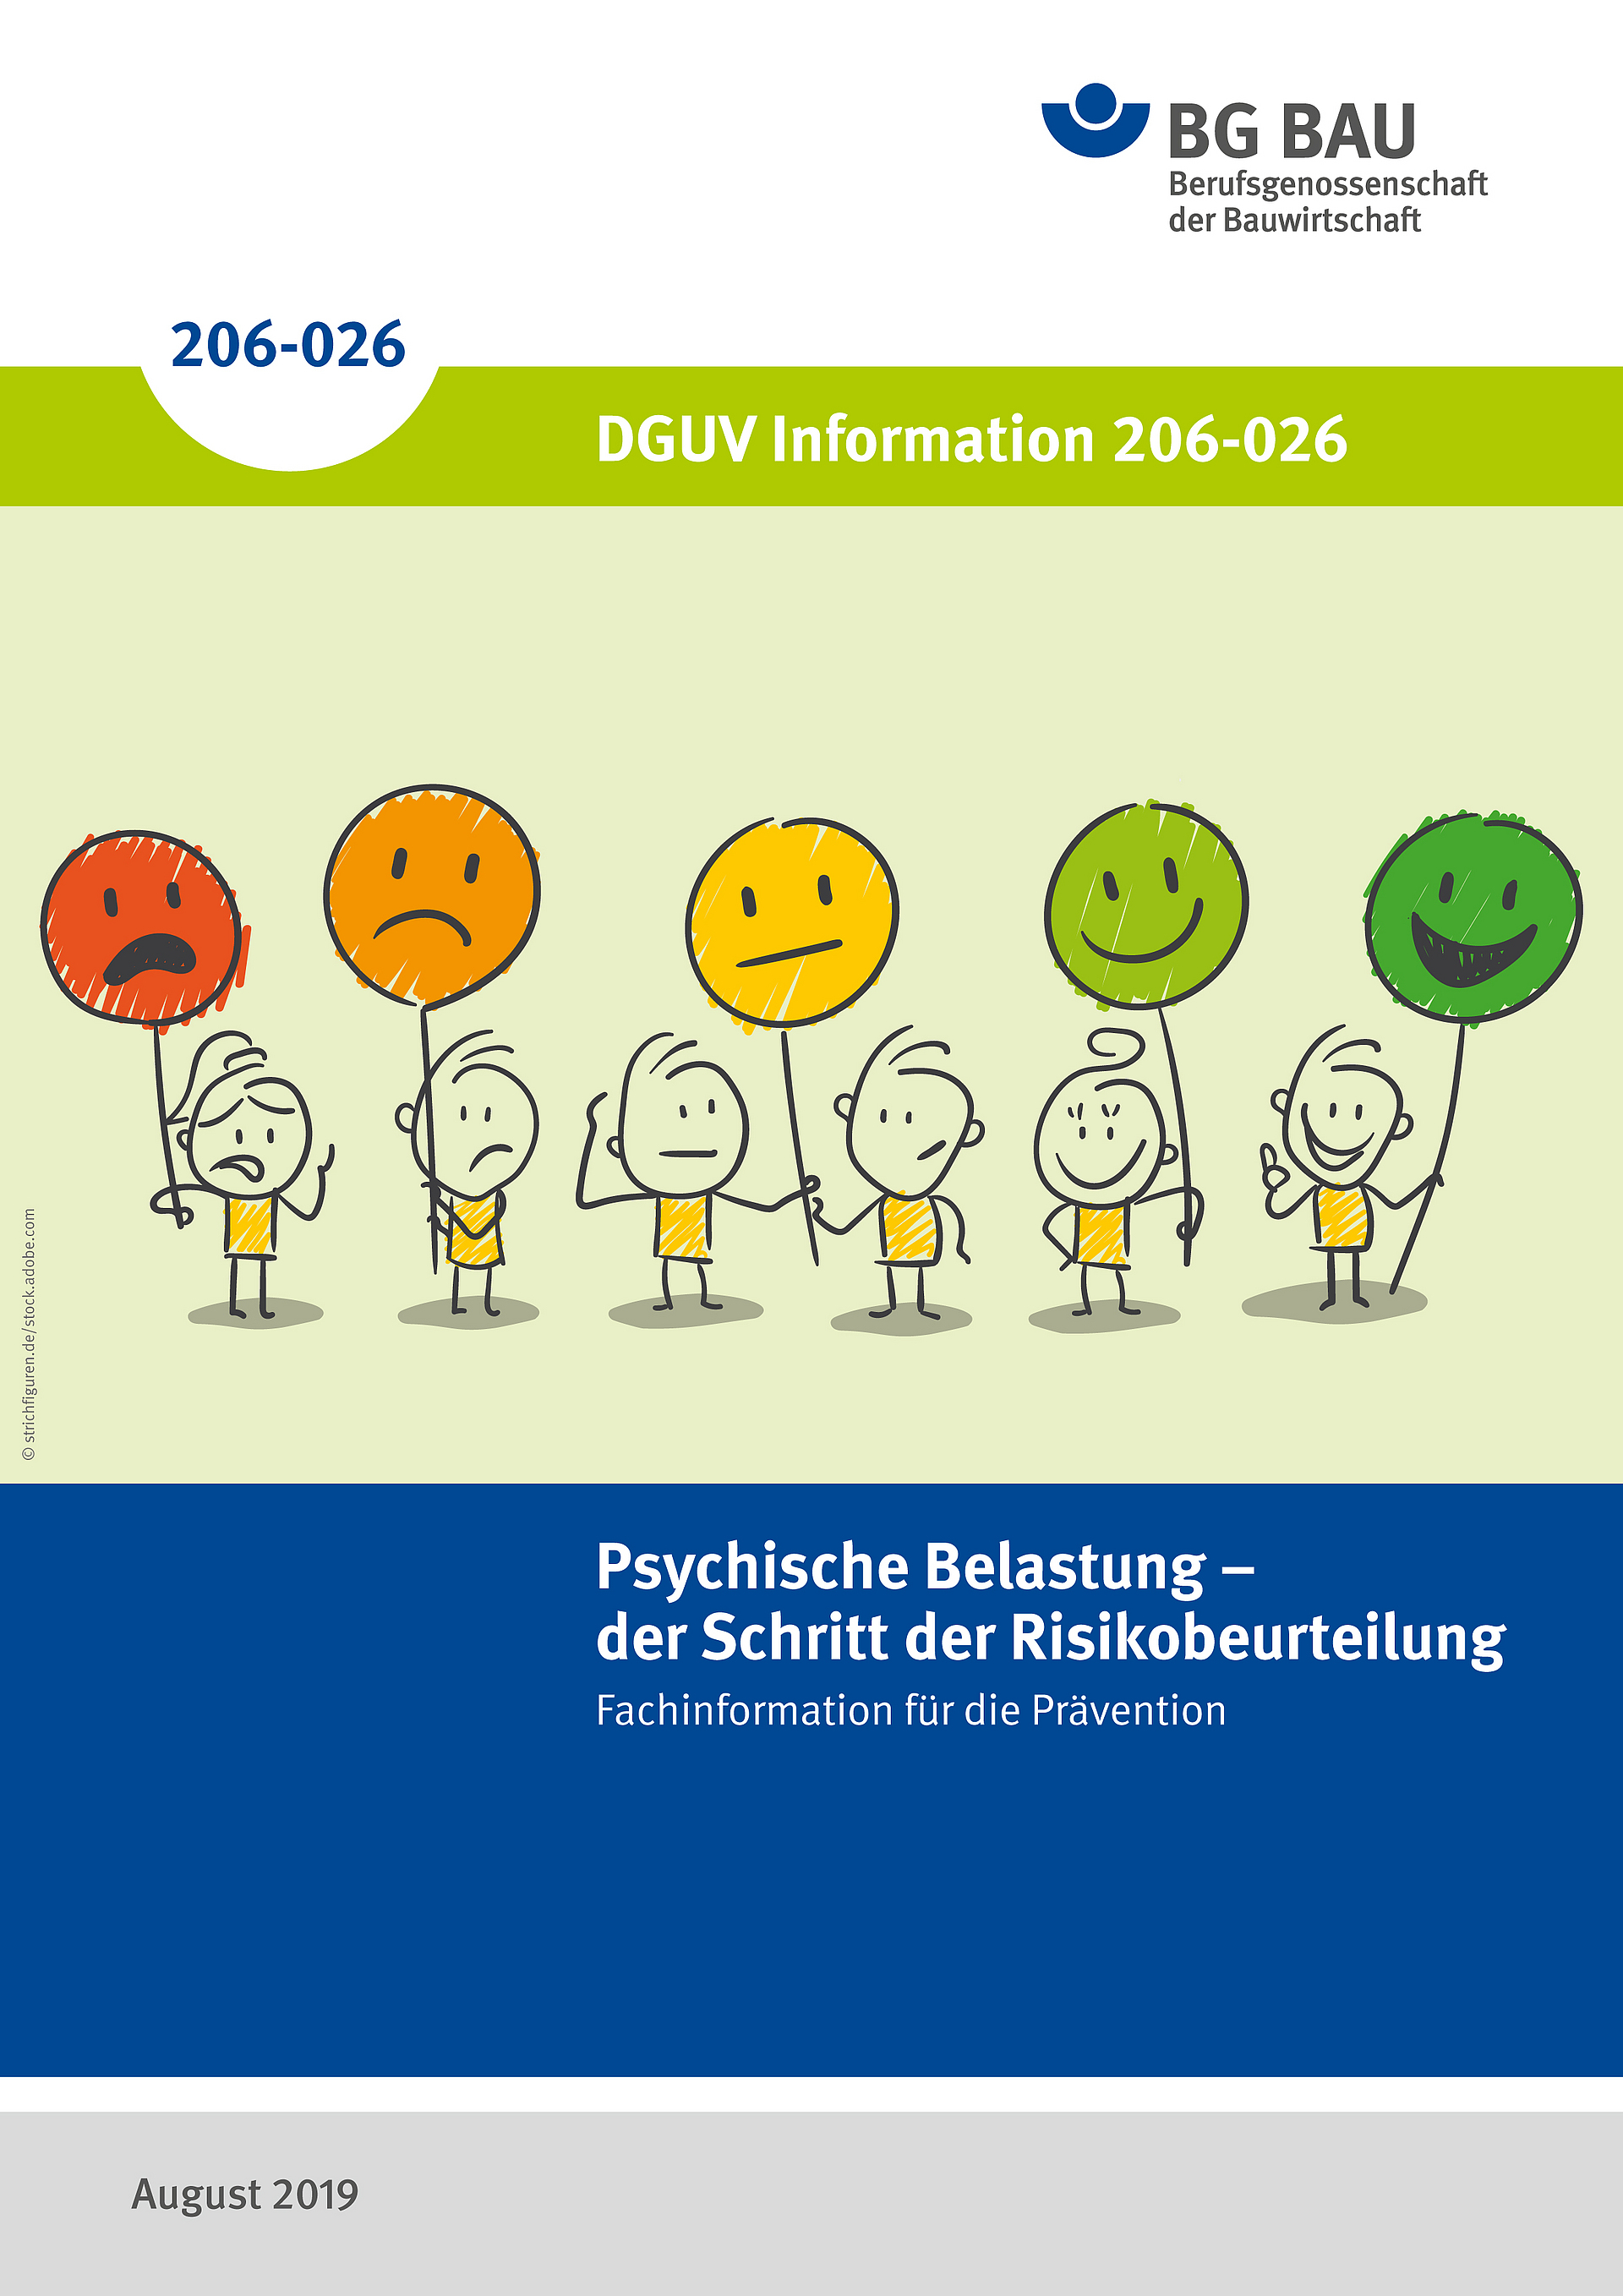 Titelbild der DGUV Information 206-026: Psychische Belastung - der Schritt der Risikobeurteilung.